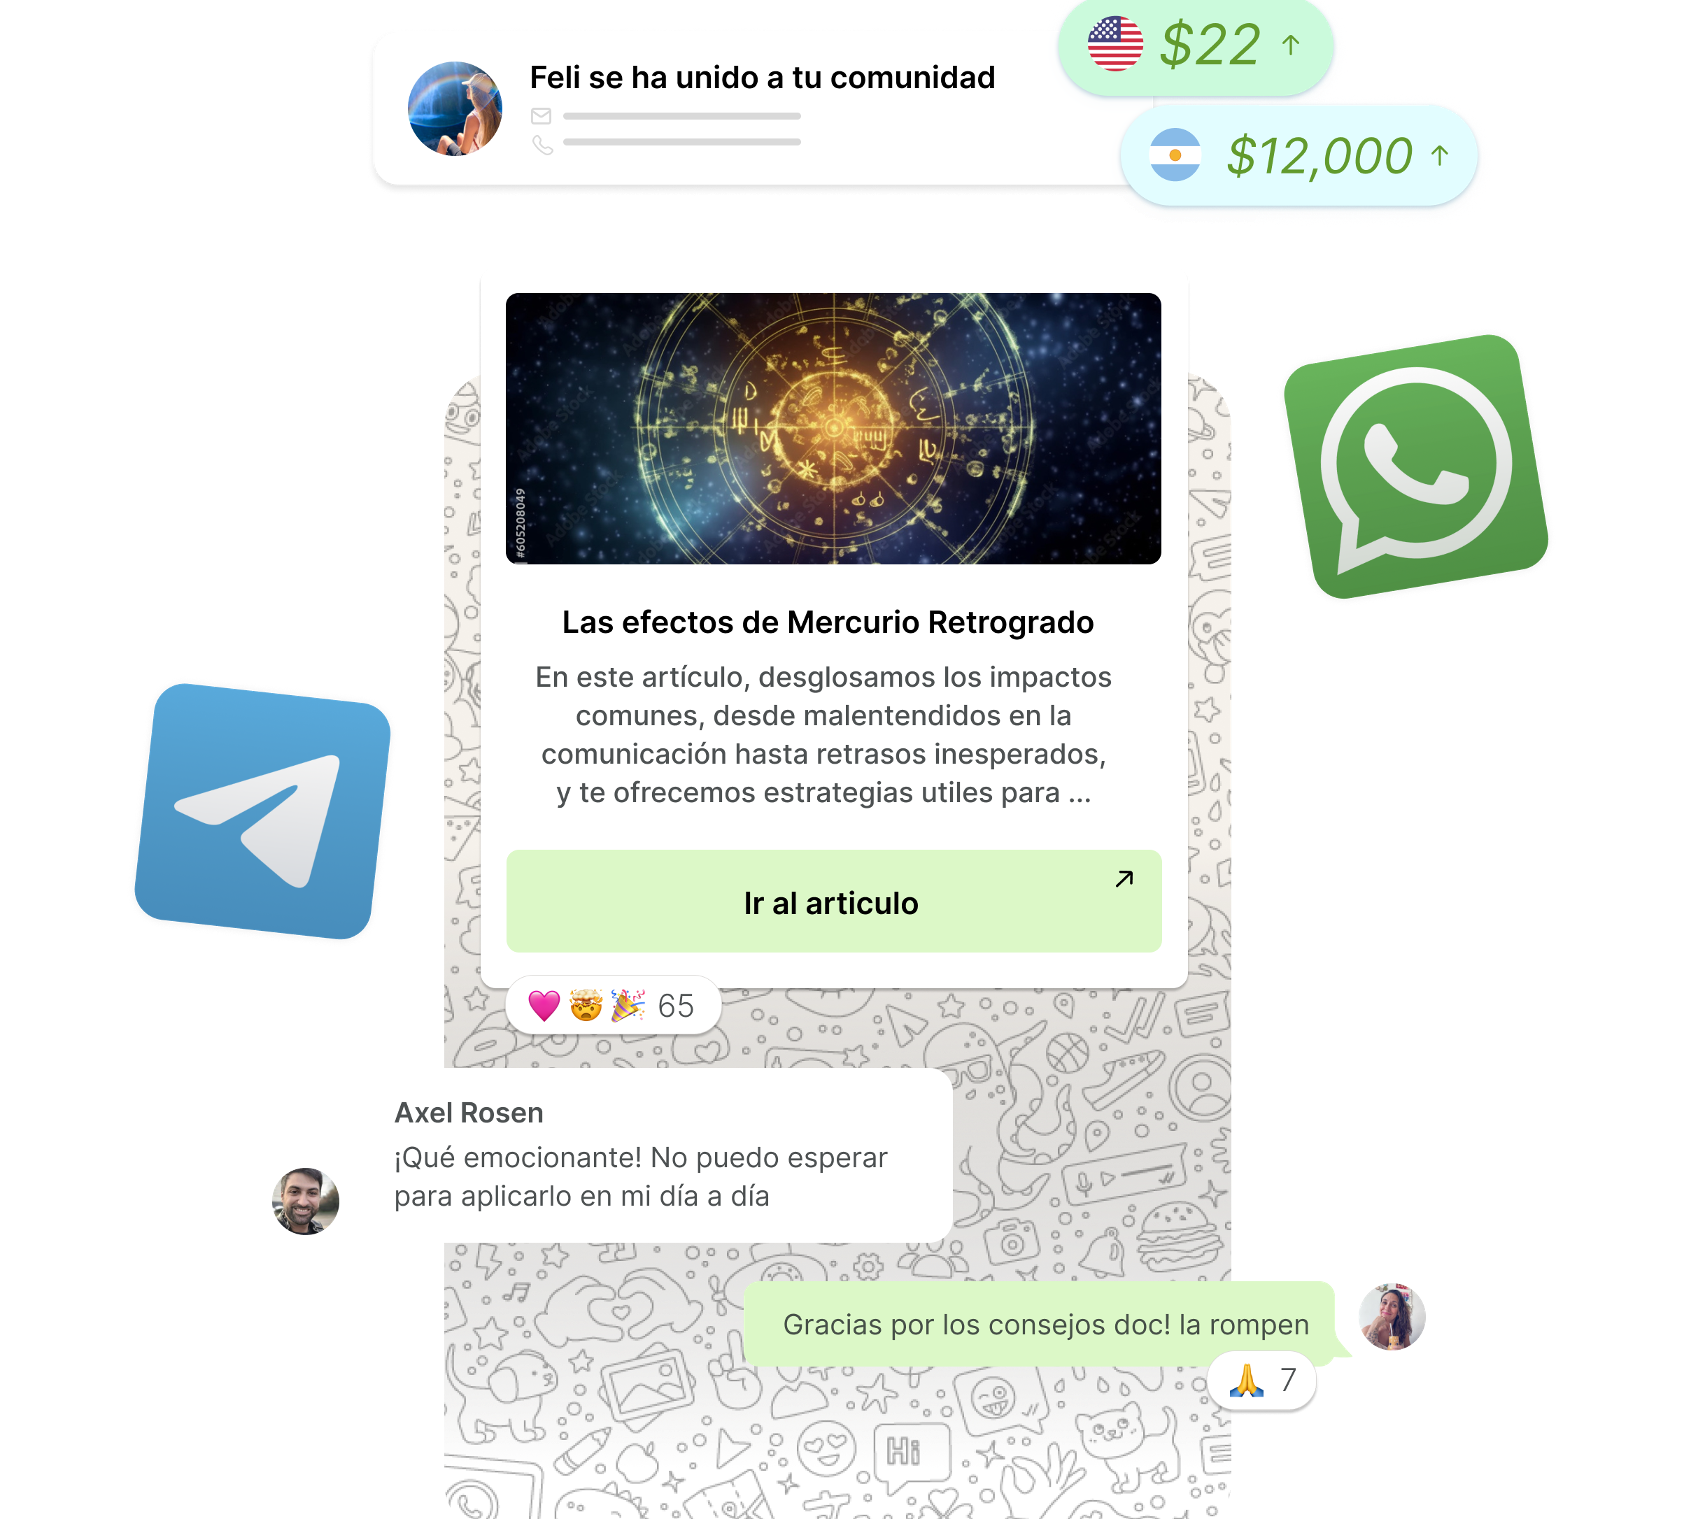 Whatsapp telegram